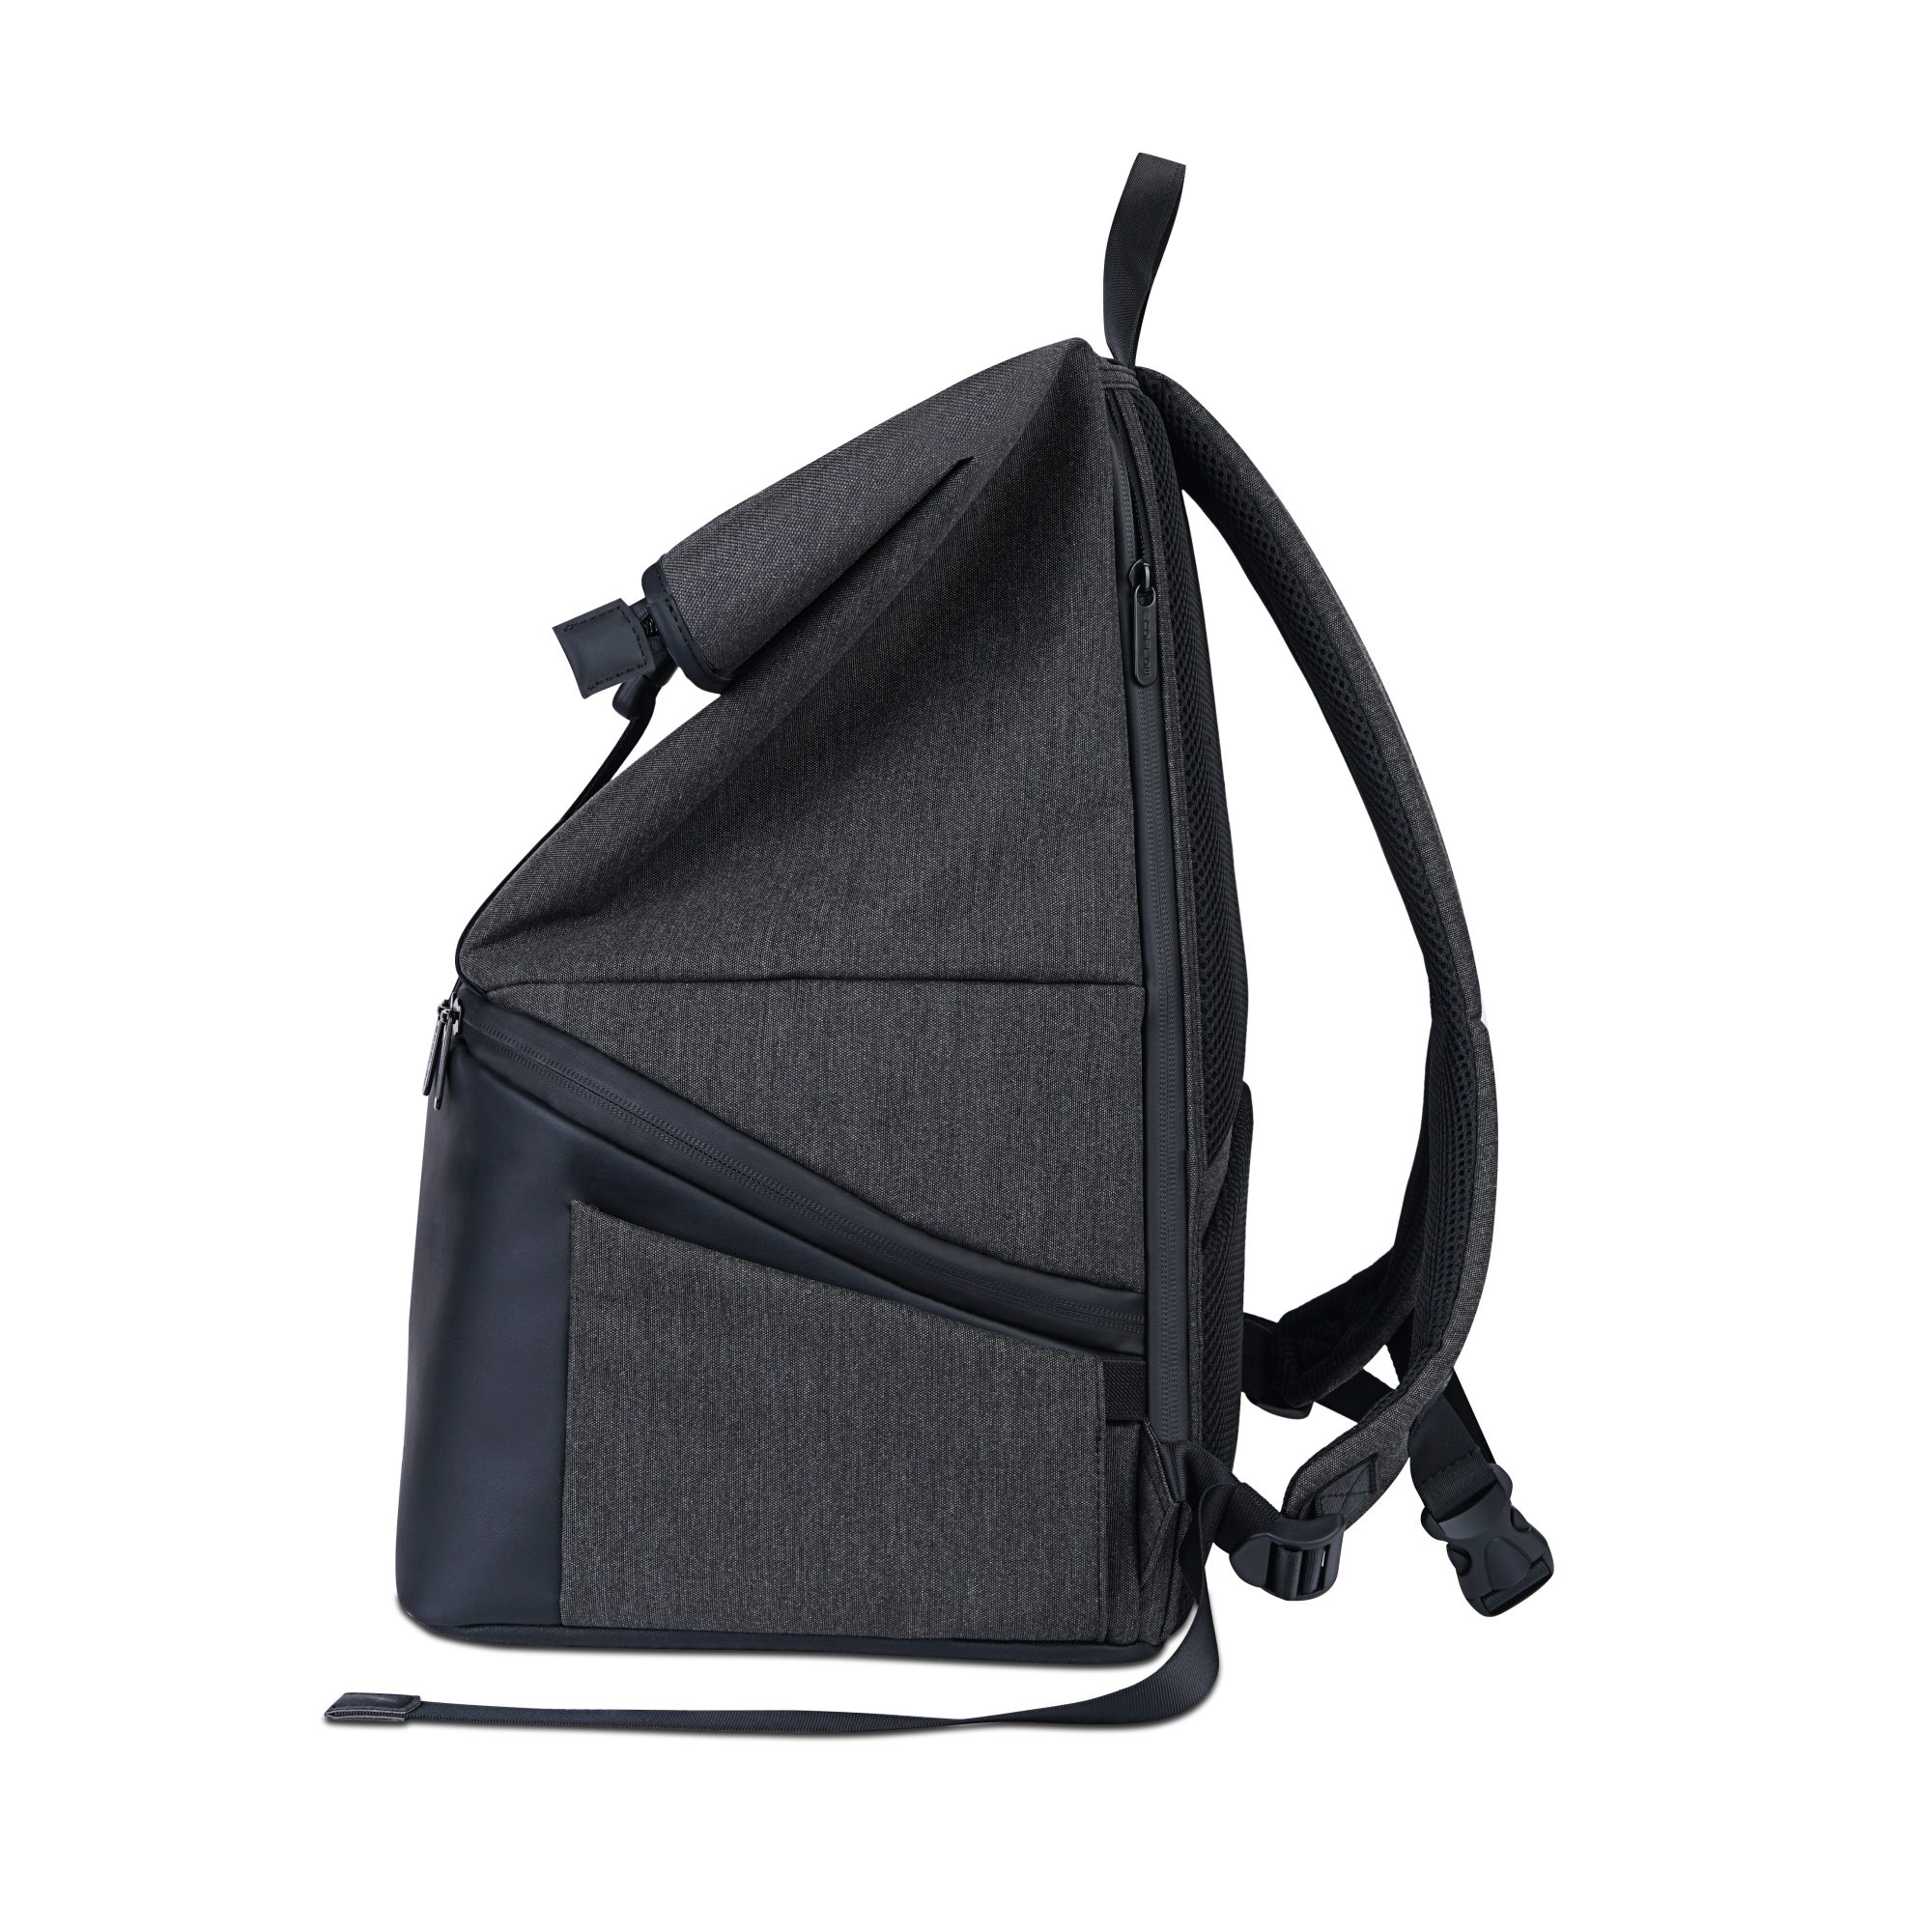 Schutztasche/Rucksack 'River 2' schwarz-grau für Powerstation + product picture